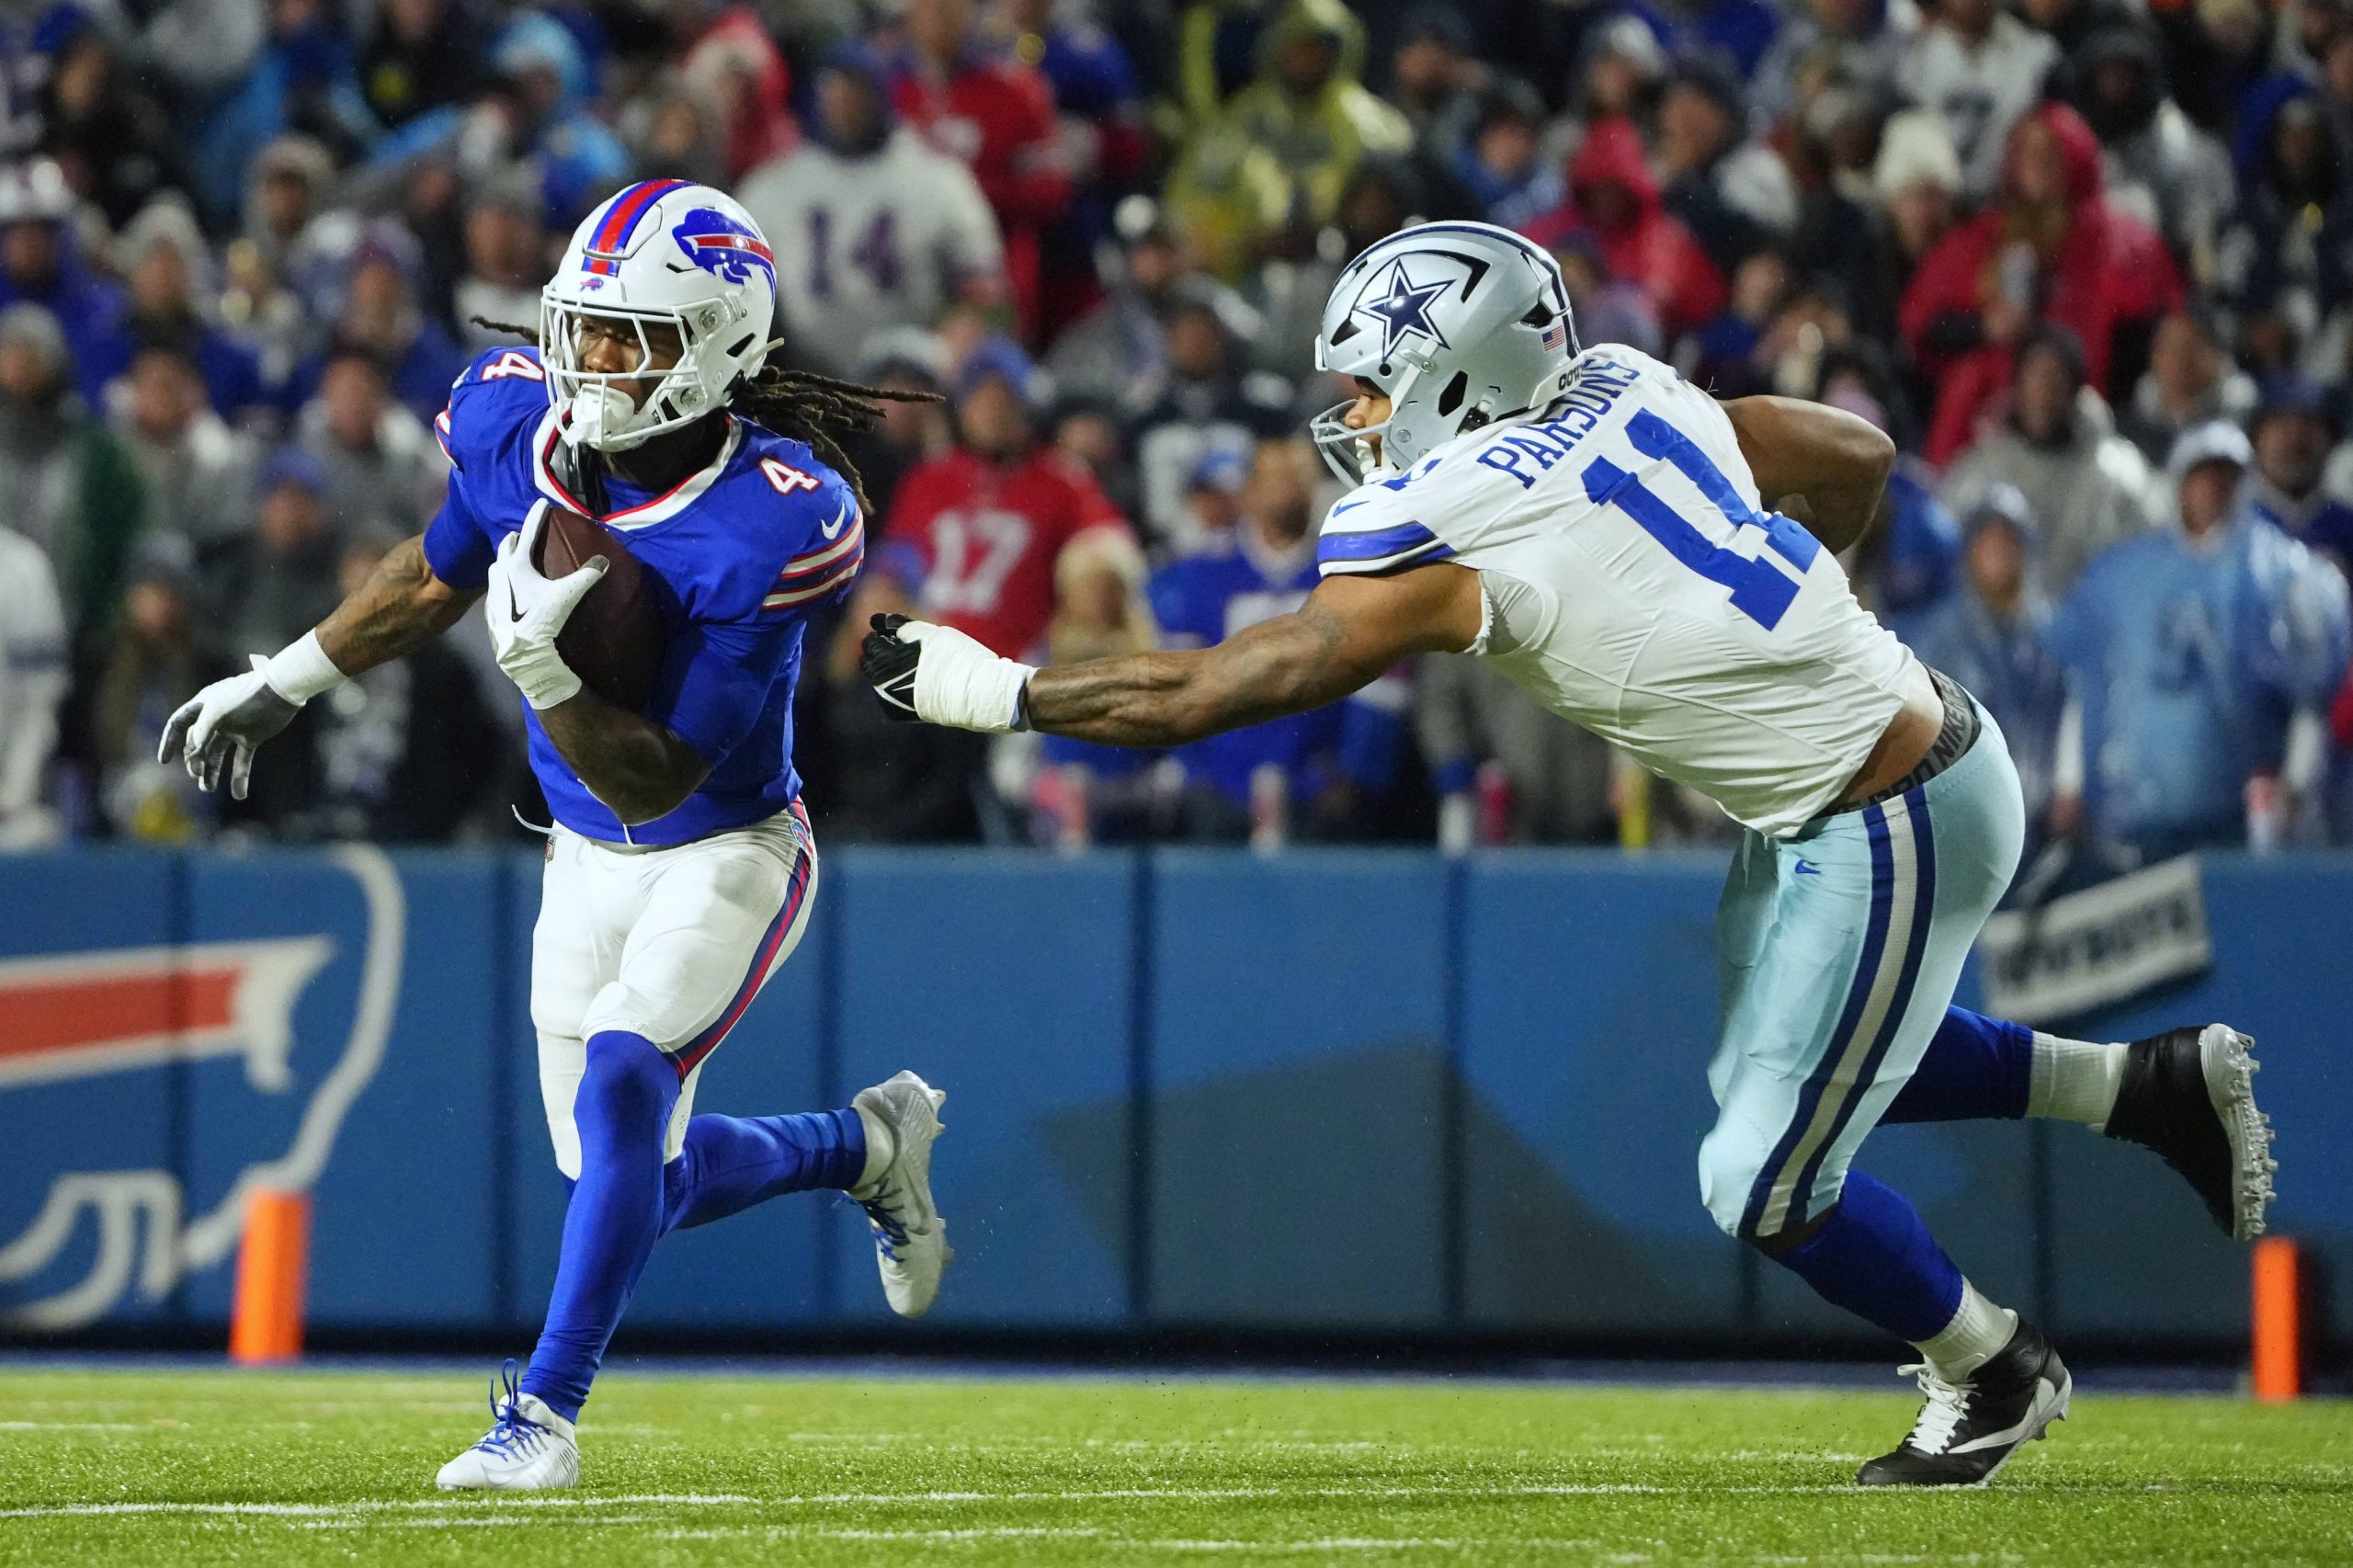 FootballR - NFL - James Cook - Die Buffalo Bills und die Dallas Cowboys spielen ein Footballspiel.